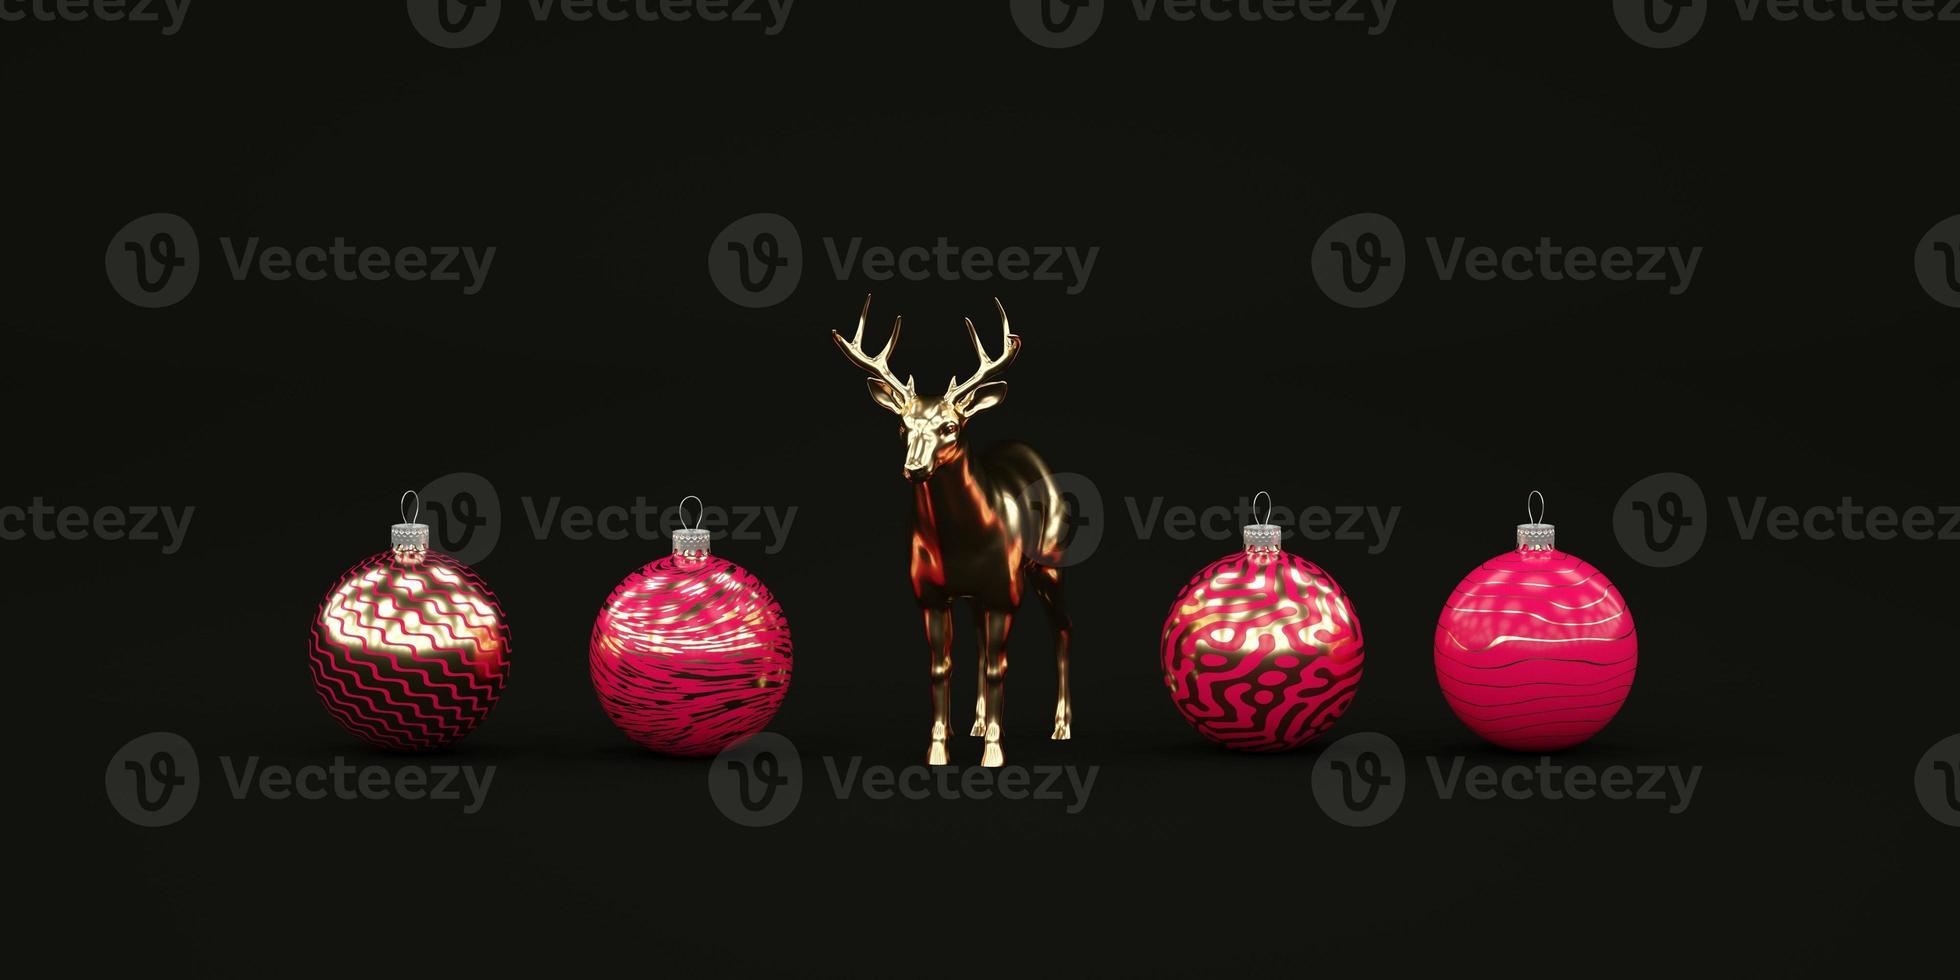 Composición navideña oscura mínima con juguetes navideños rojos y ciervos dorados render 3d foto